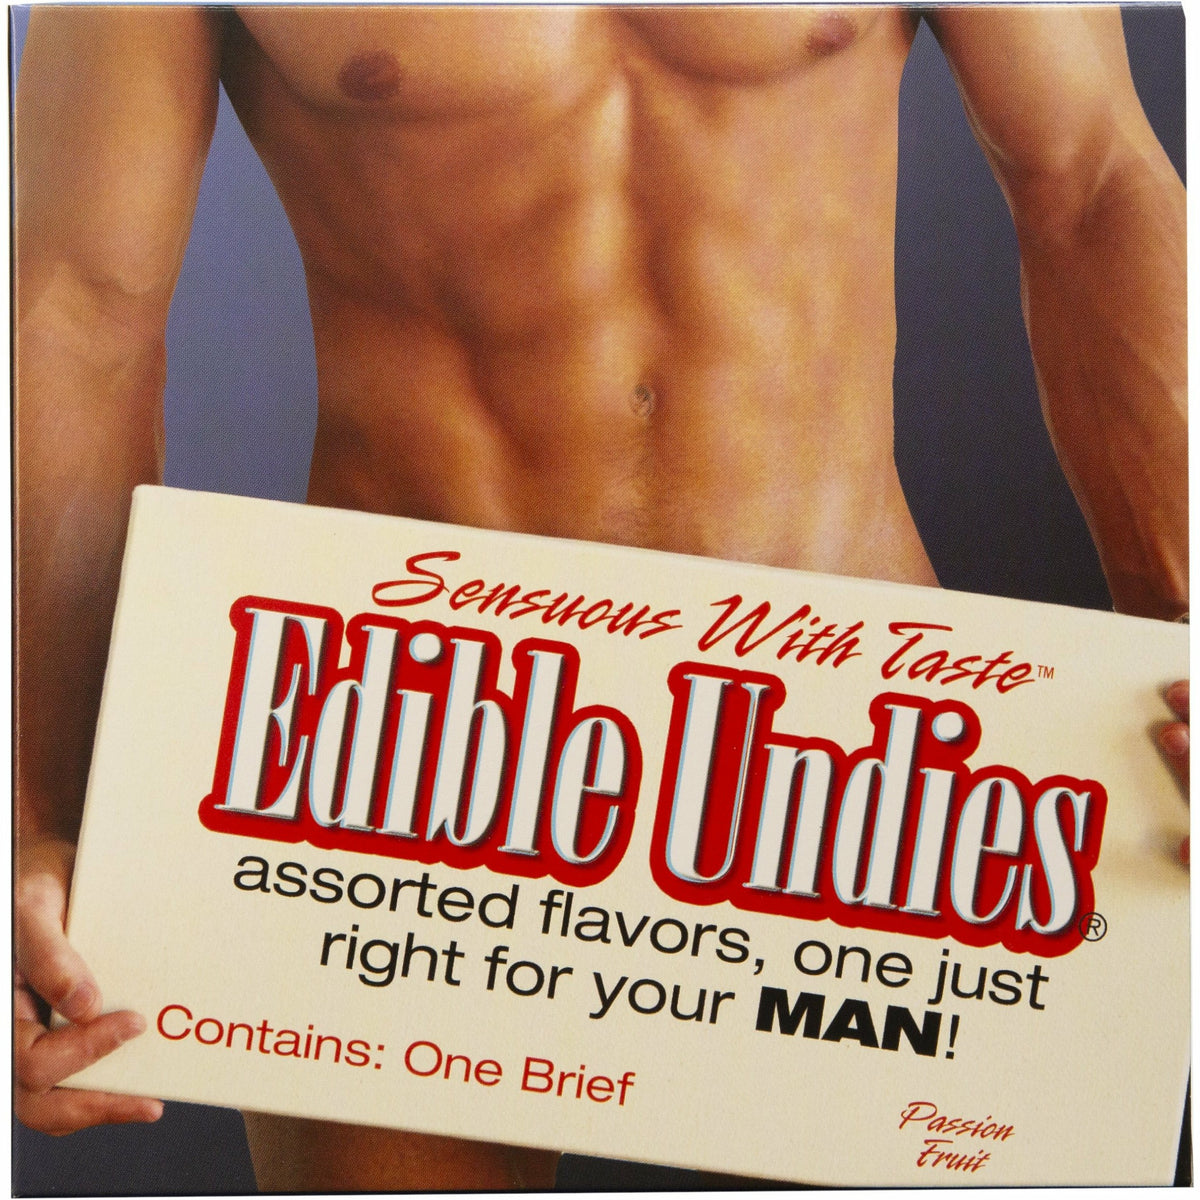 King Edible Undies for Men - Passion Fruit